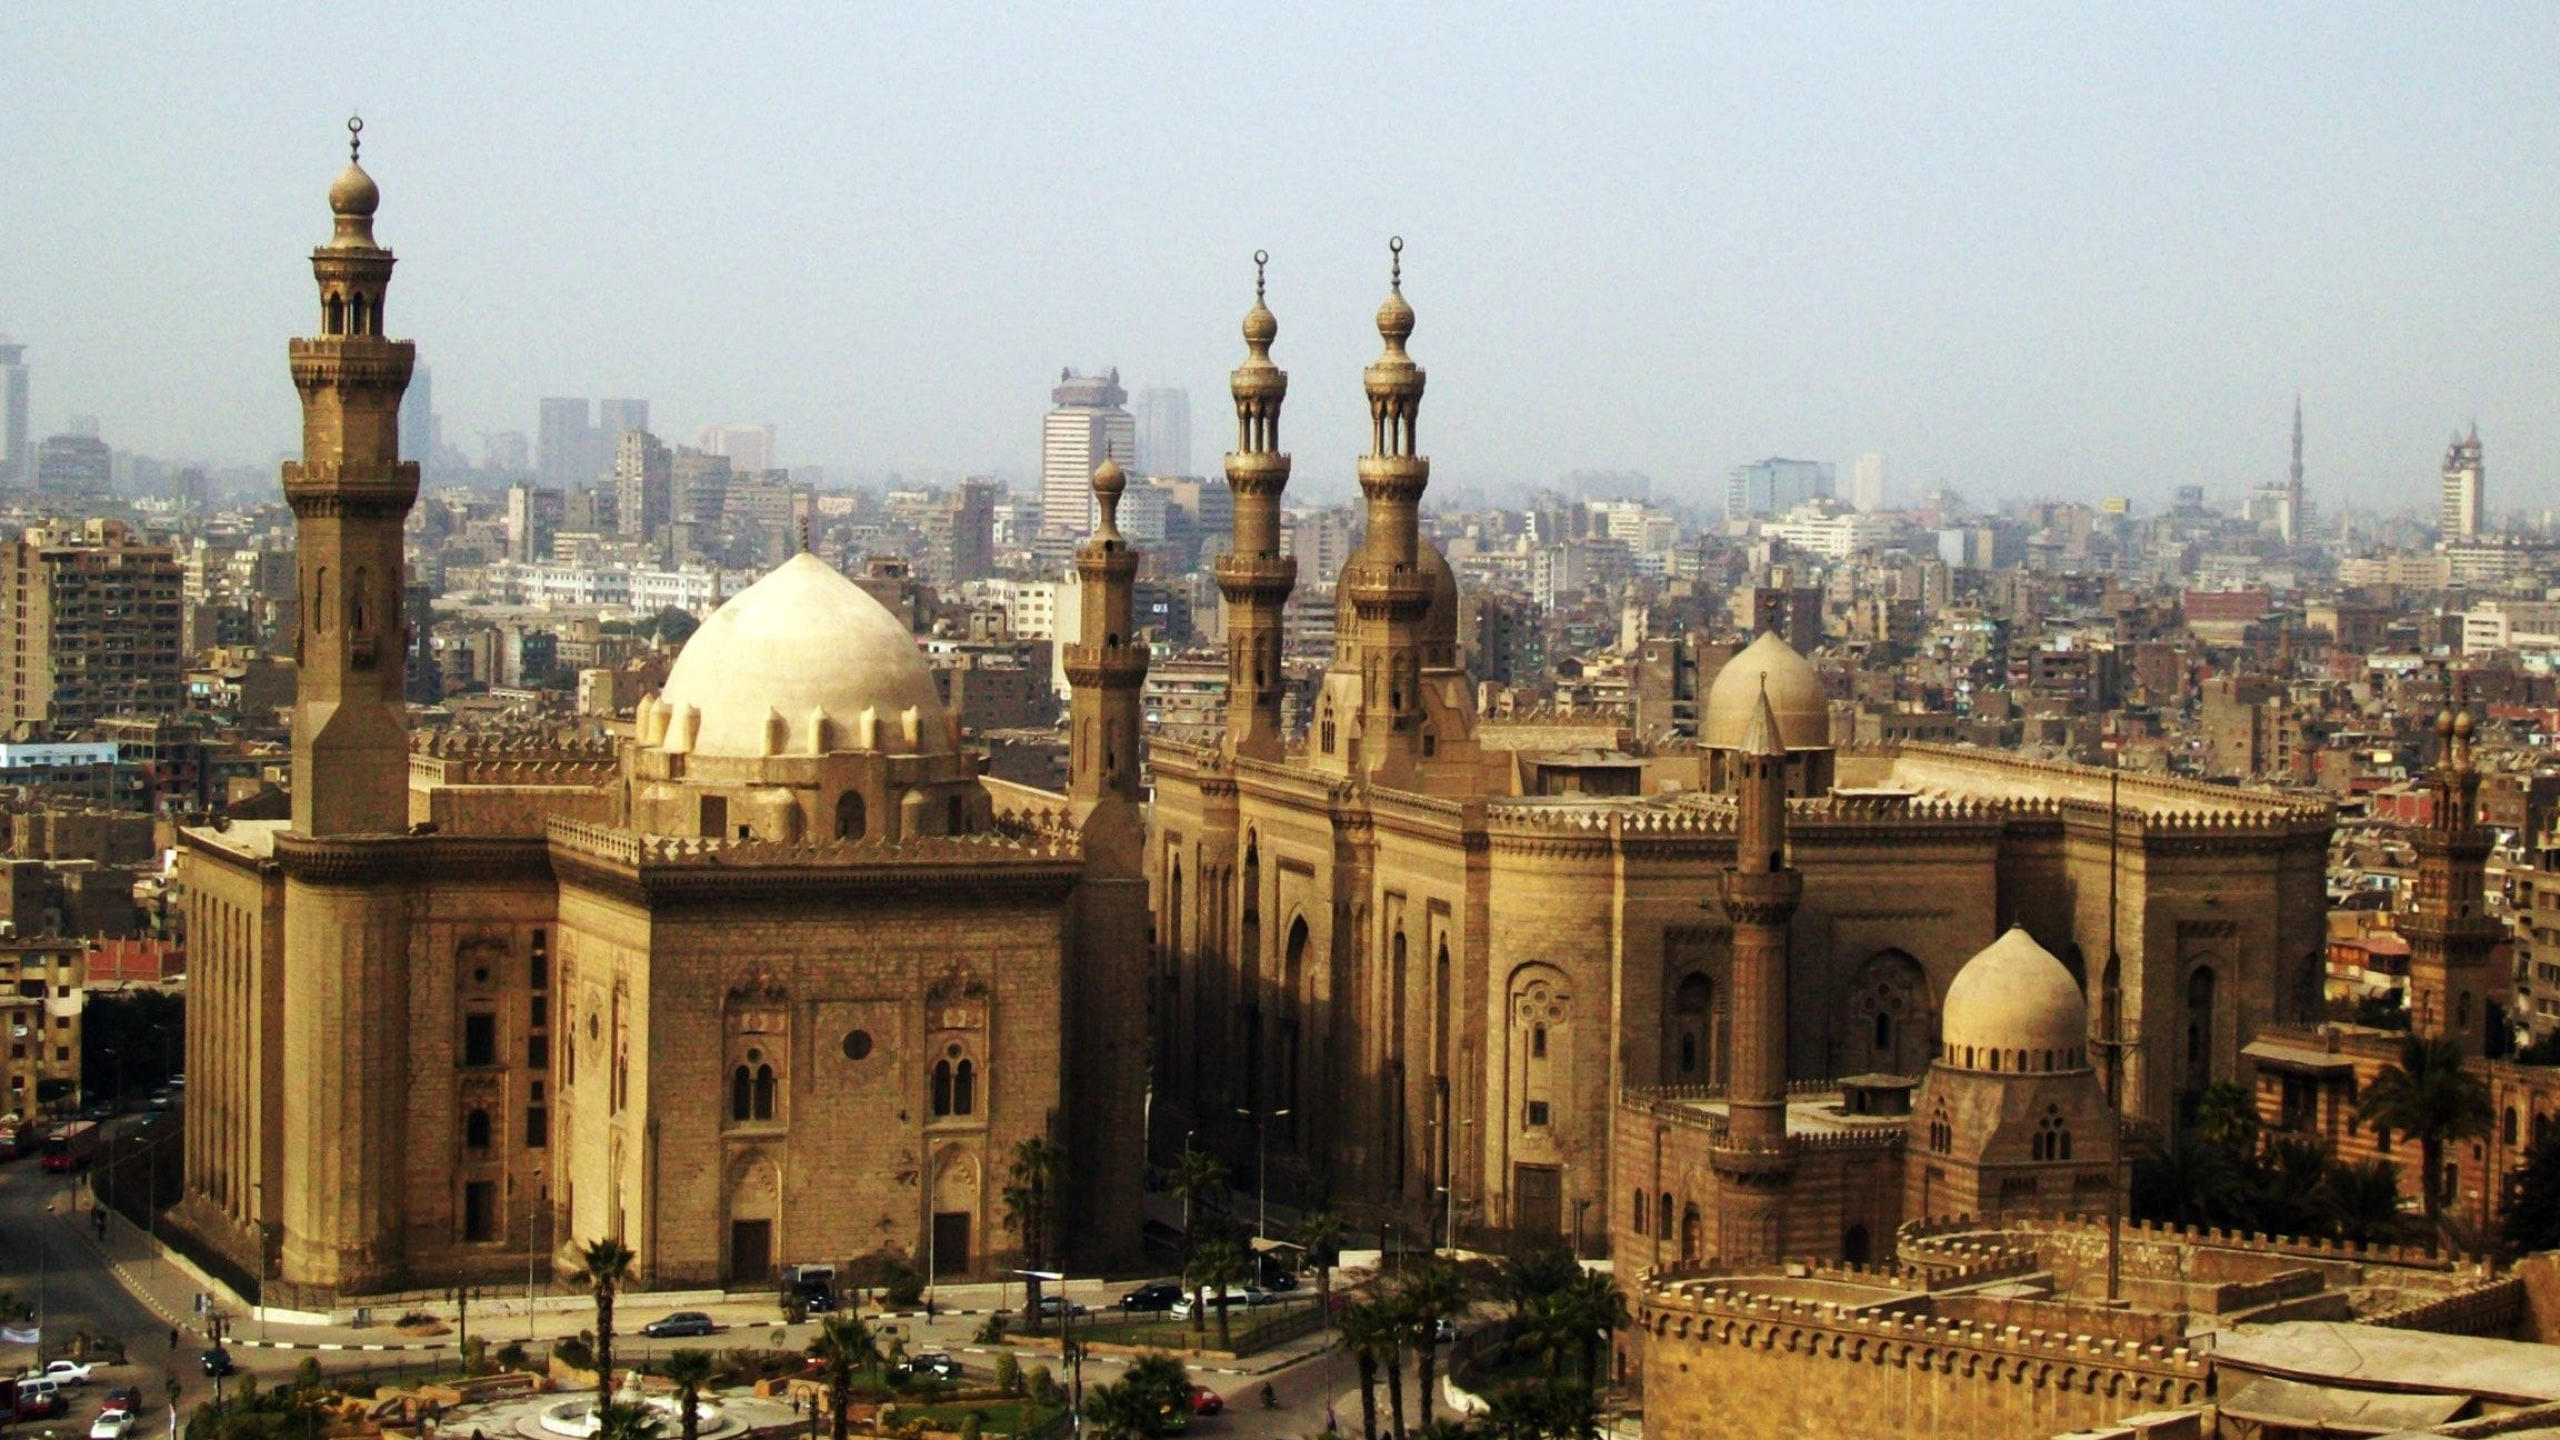 Cairo tourism, Widescreen wallpapers, Breathtaking views, Travel inspiration, 2560x1440 HD Desktop